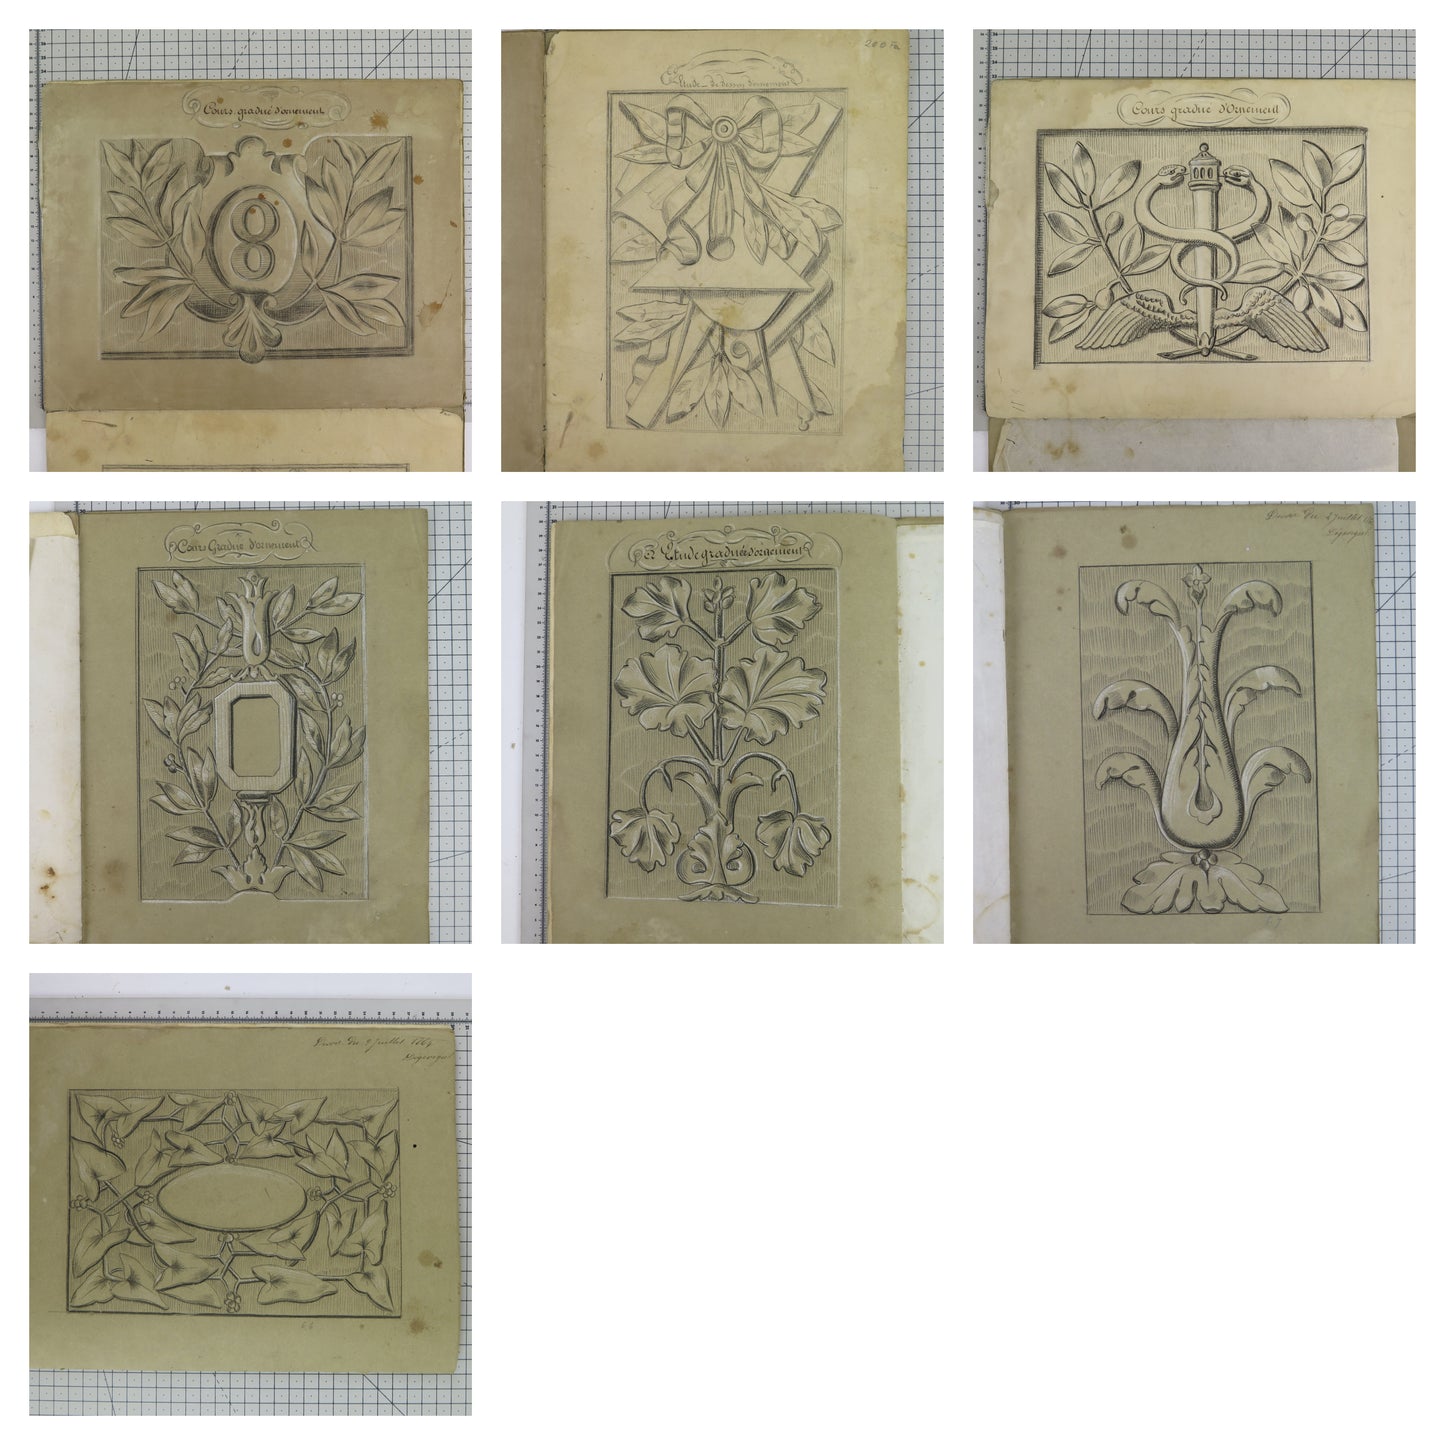 Antico album da disegno di studente francese con voti 16 disegni antichi bm53.5a